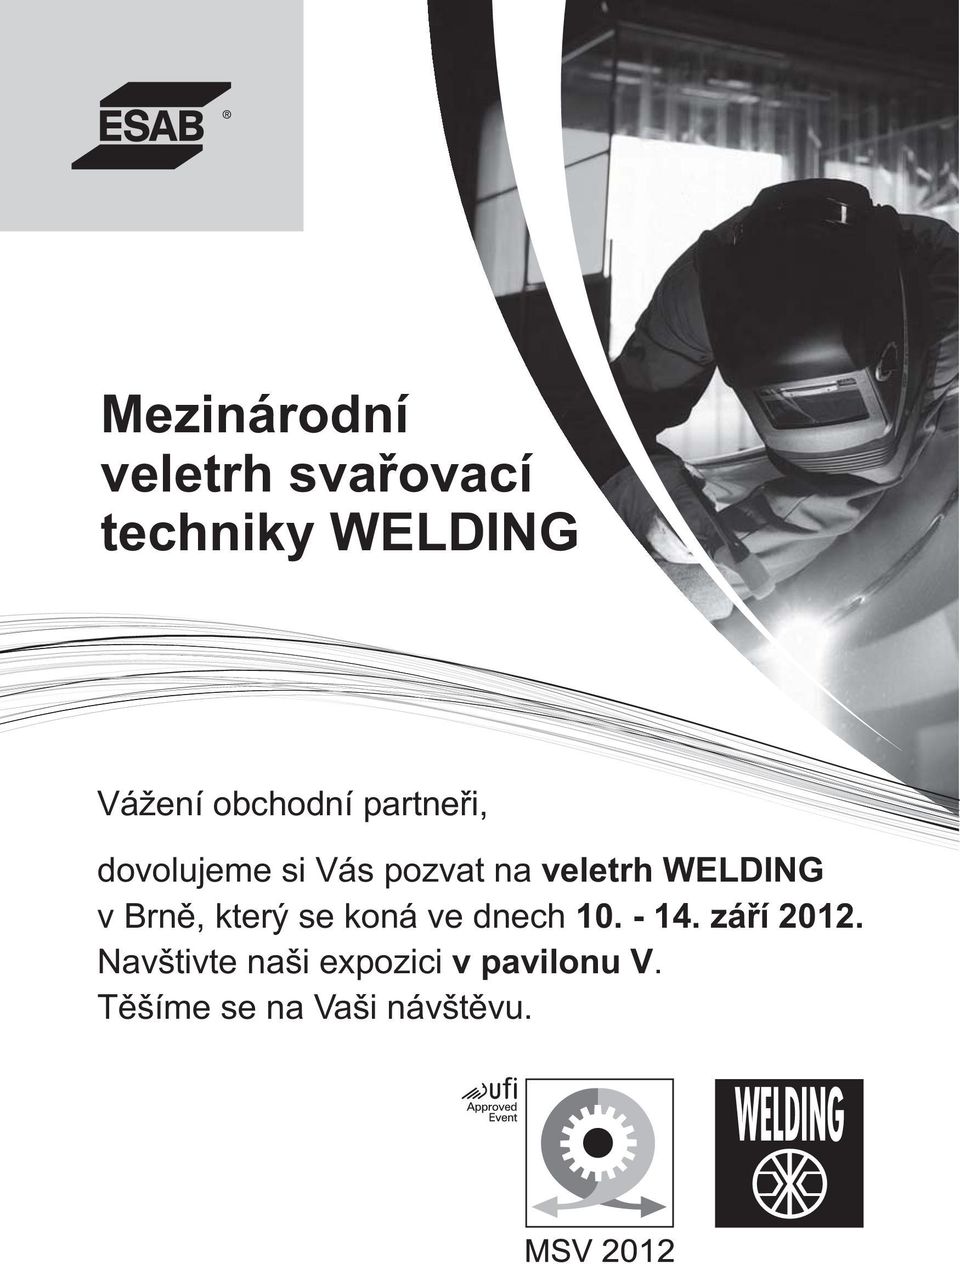 WELDING v Brně, který se koná ve dnech 10. - 14. září 2012.